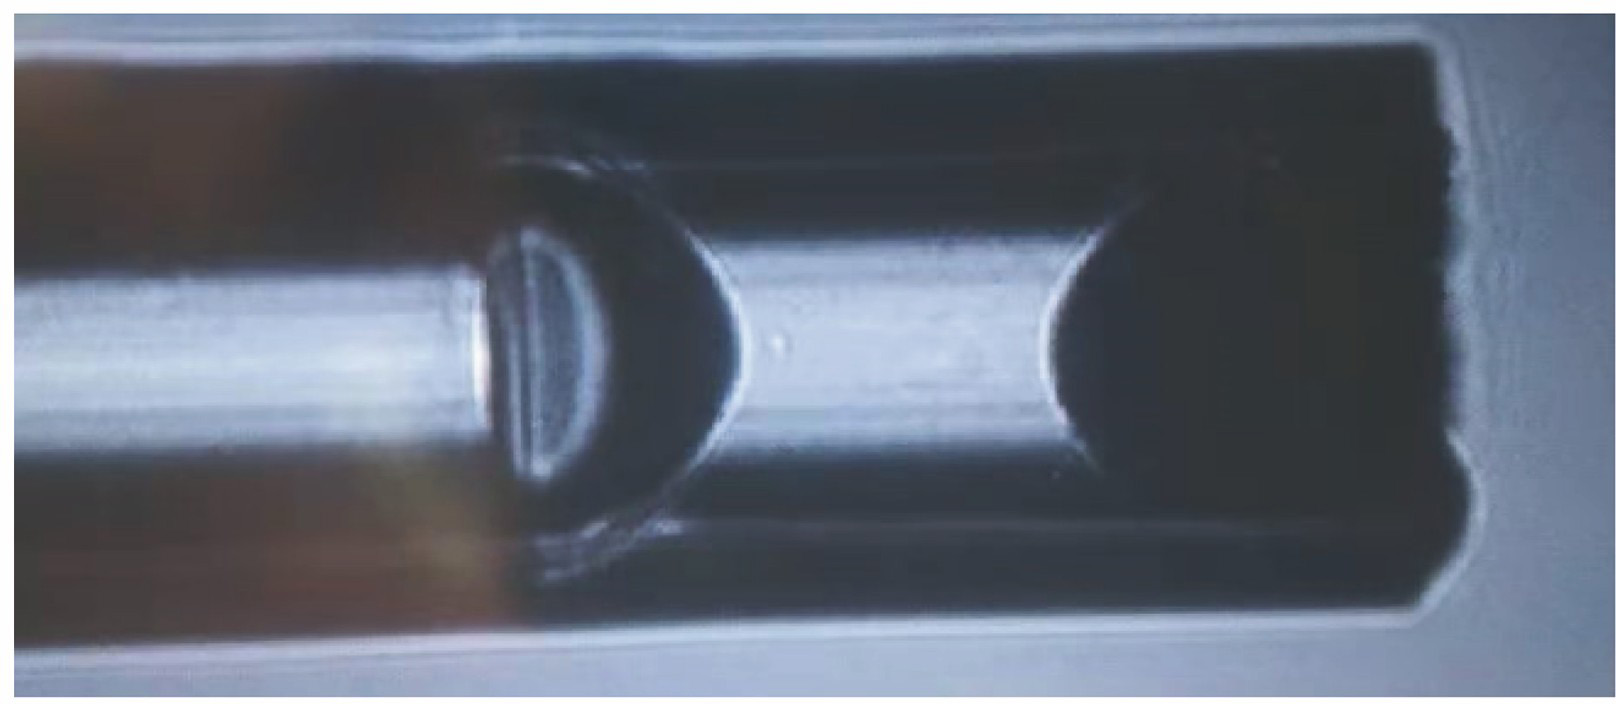 Physical image of optical fiber FPI hydrogen sensor based on PDMS filling